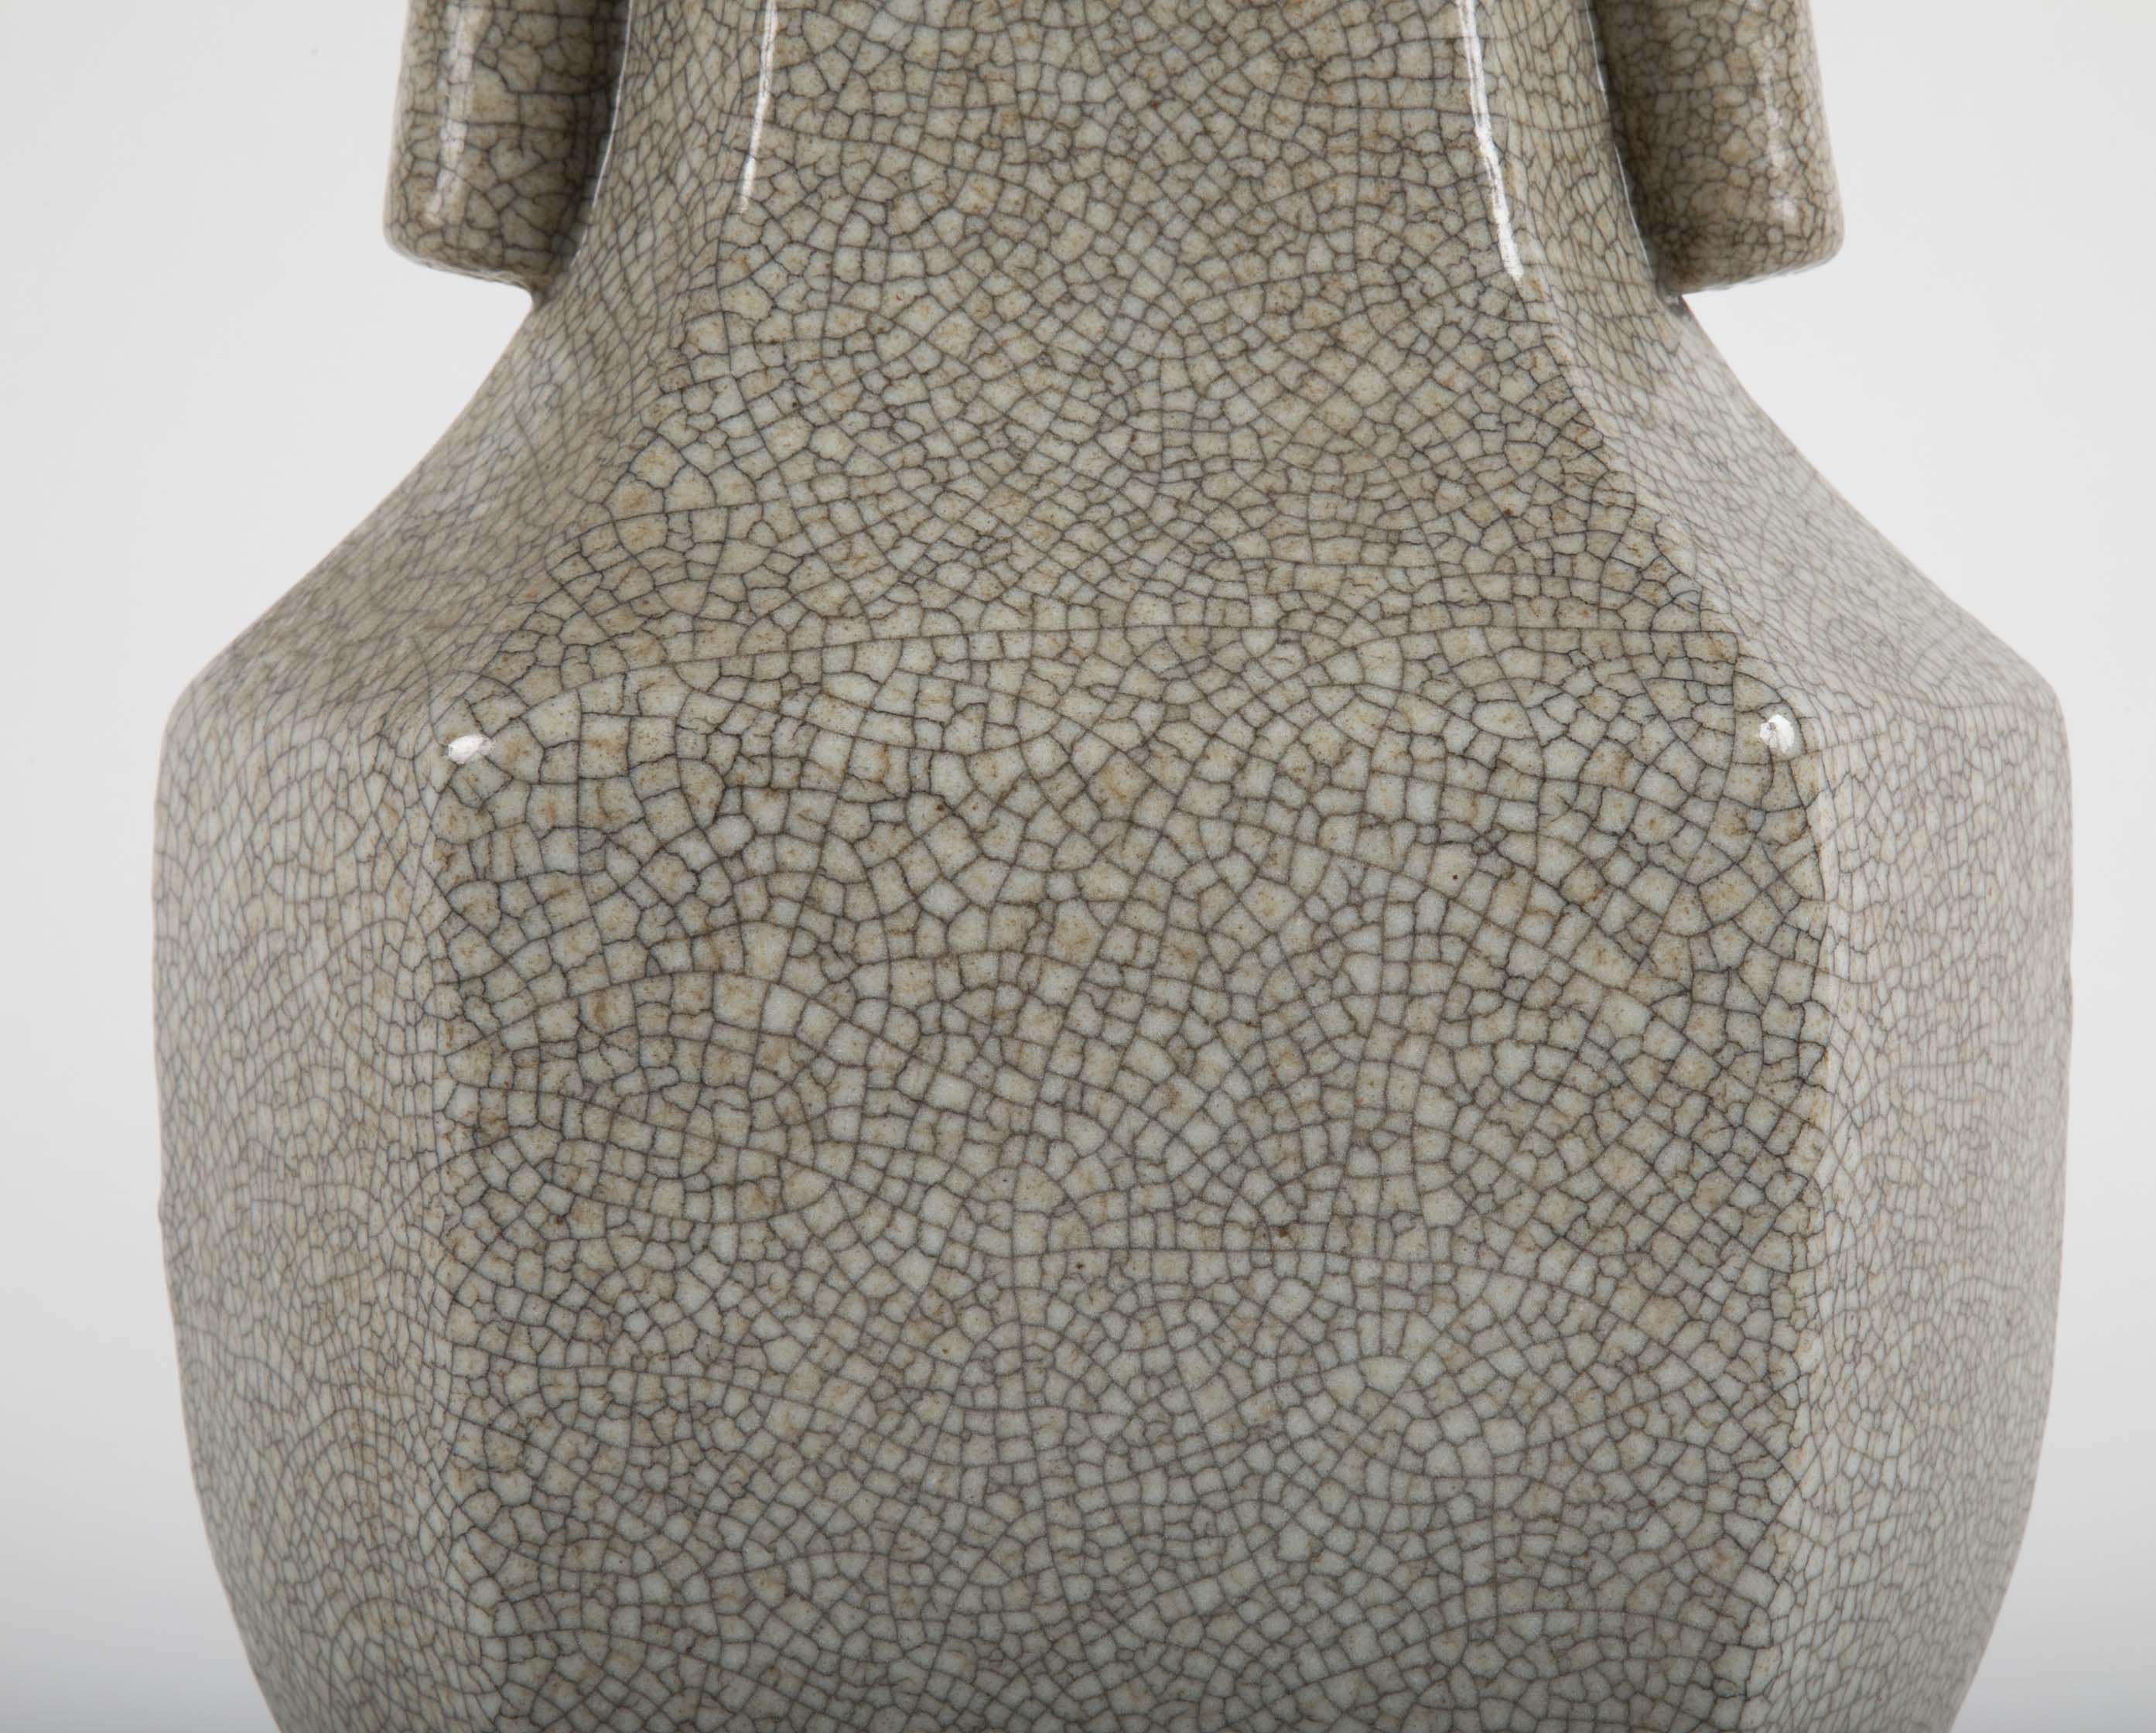 Late Qing Dynasty Gu Form Vase